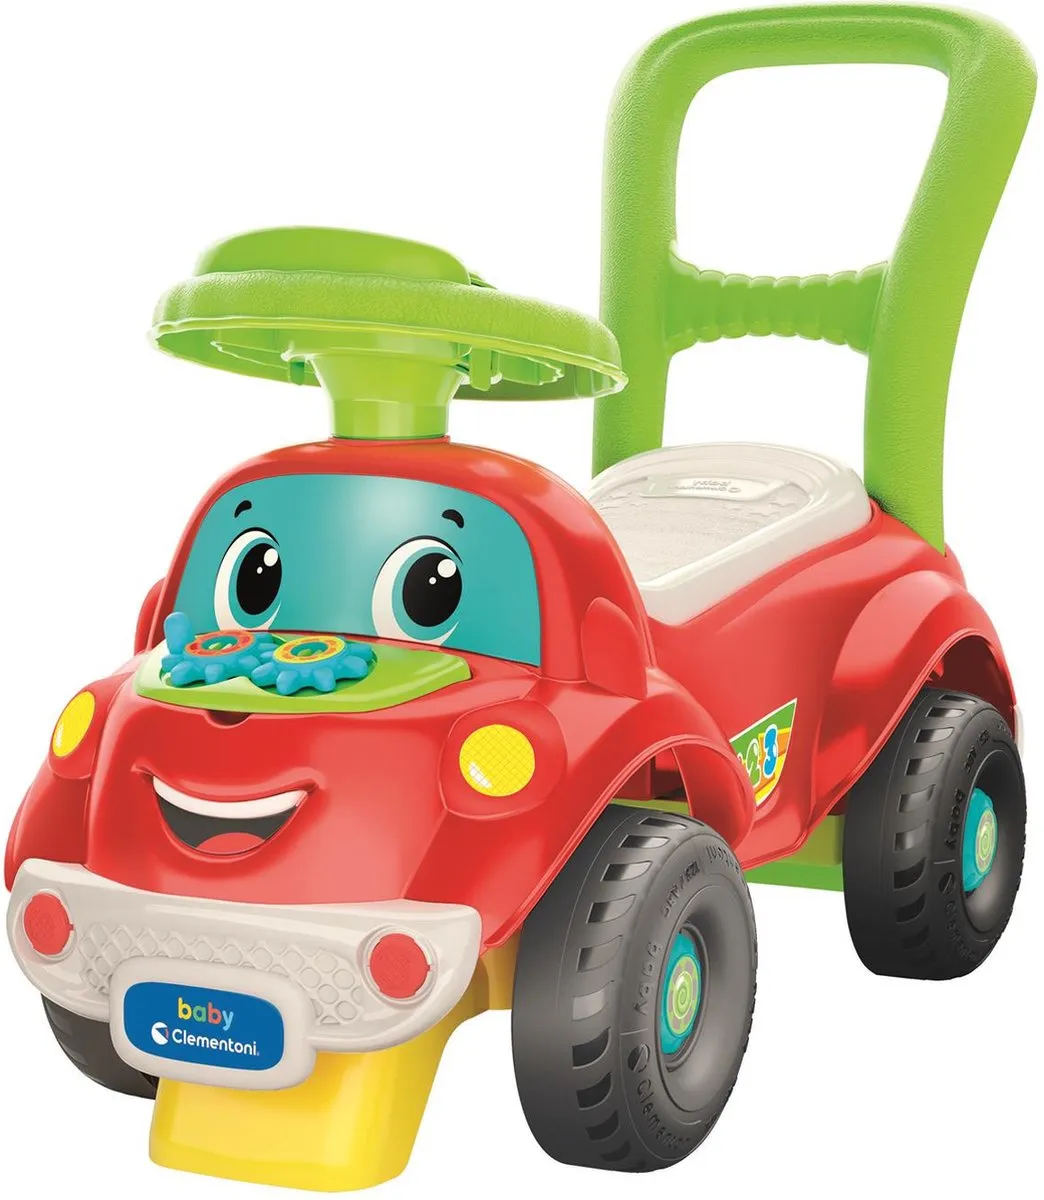 Baby Clementoni - Ride on Car 3 in 1 - Loopwagen - Loopauto Met Blokken en Figuren - vanaf 1 jaar speelgoed